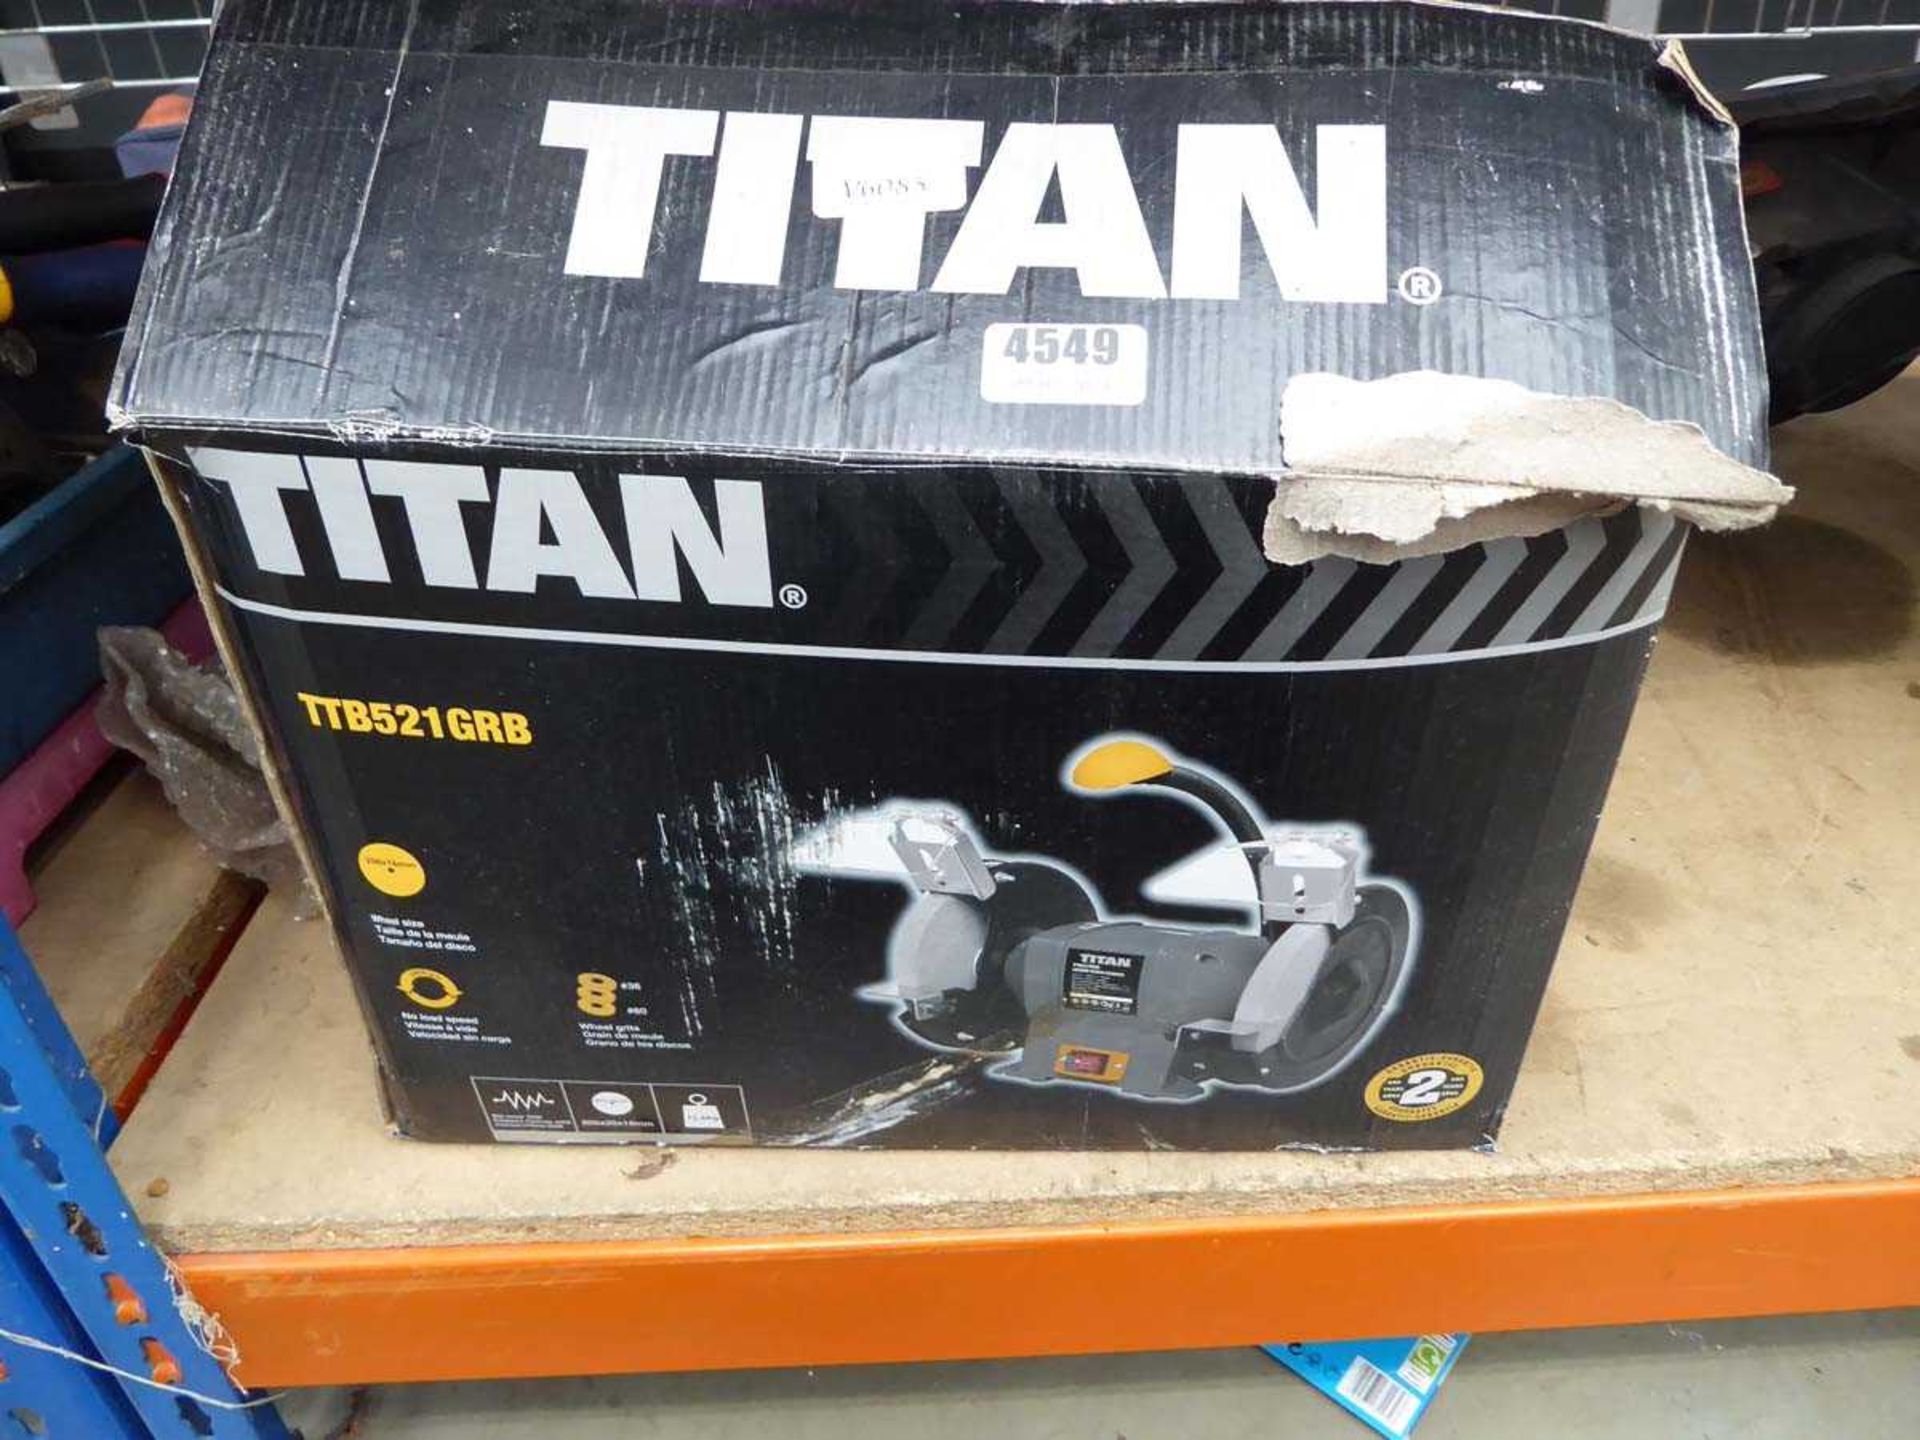 Titan double ended bench grinder